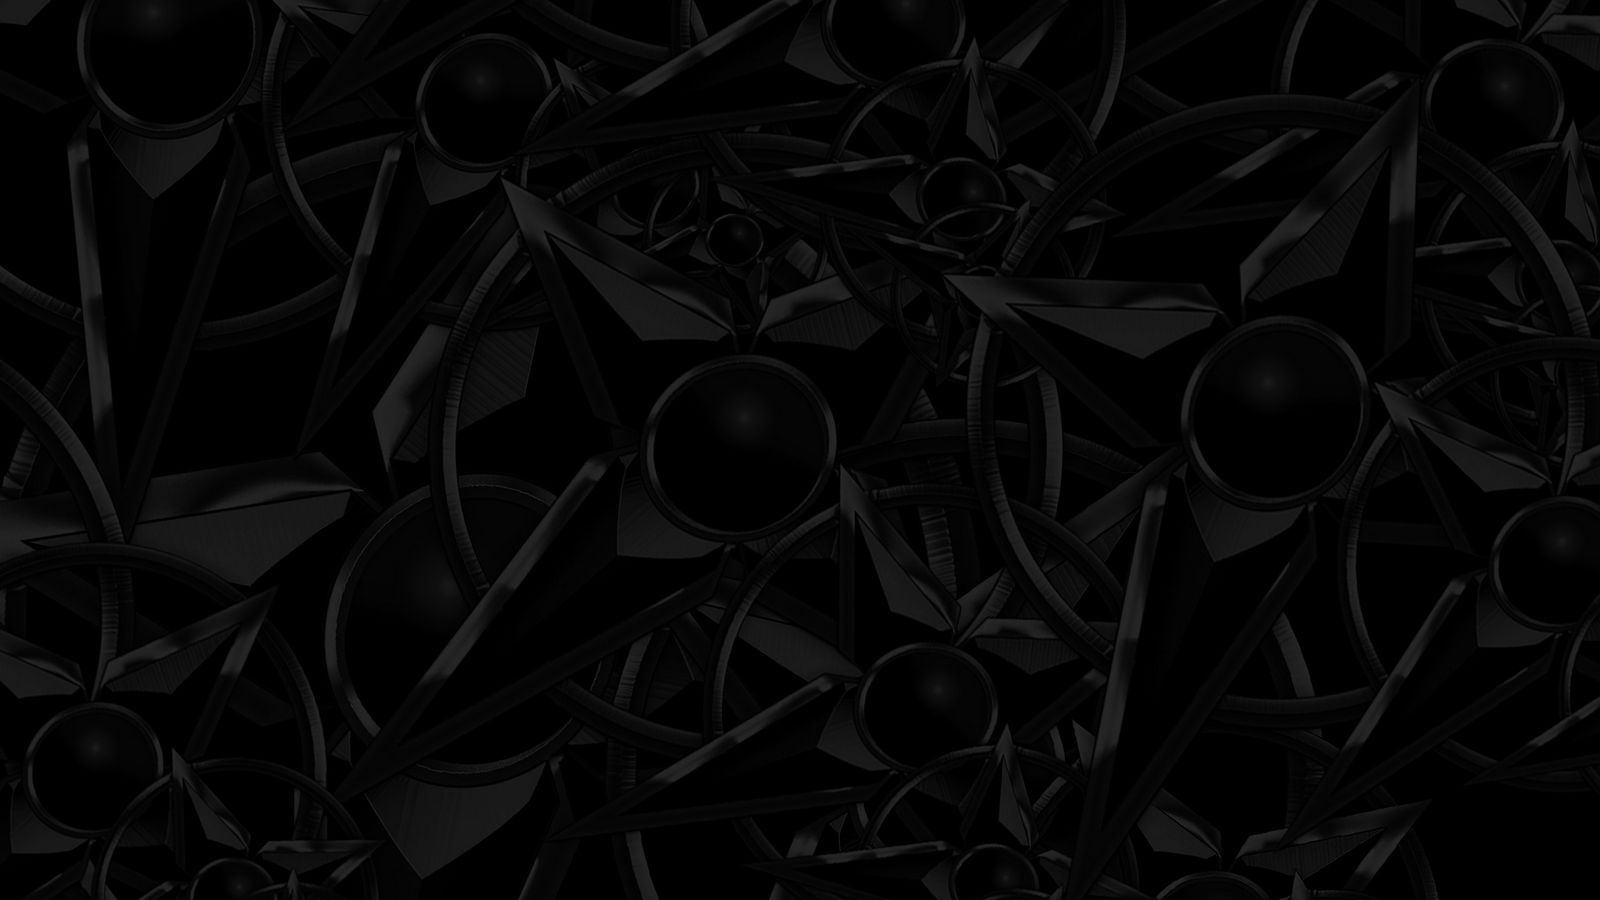 Bạn muốn tìm kiếm một hình nền đen 1600x900 với cấu trúc tối để tạo nên một không gian làm việc tối giản và chuyên nghiệp? Bạn đã đến đúng nơi rồi! Chúng tôi cung cấp những hình nền đen 1600x900 đẹp mắt và độc đáo với cấu trúc tối đa để giúp bạn tạo nên không gian làm việc hiện đại và thẩm mỹ.